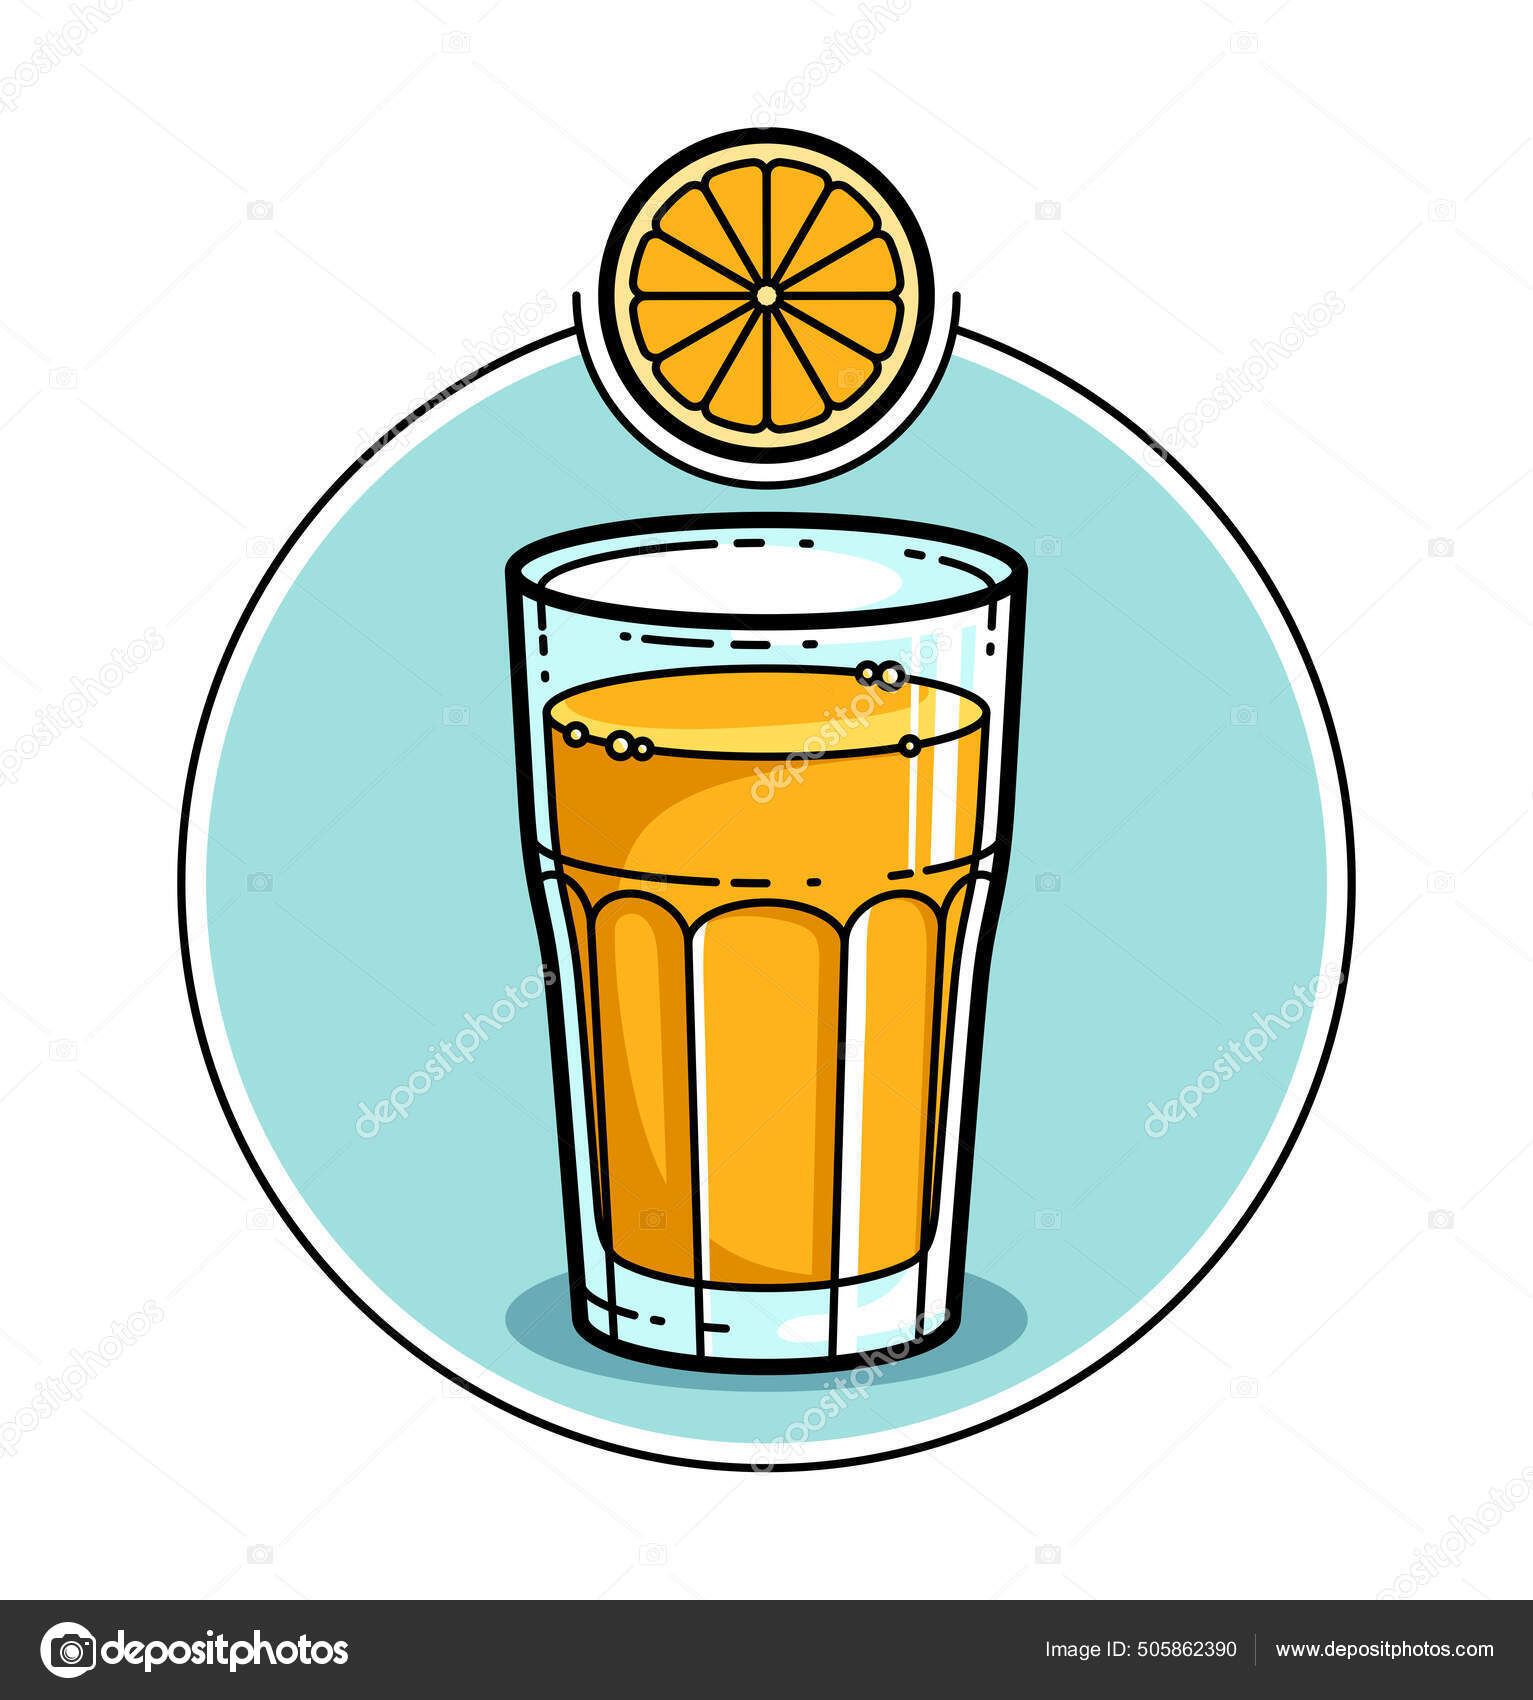 Desenho e logotipo de ilustração de copo de bebida